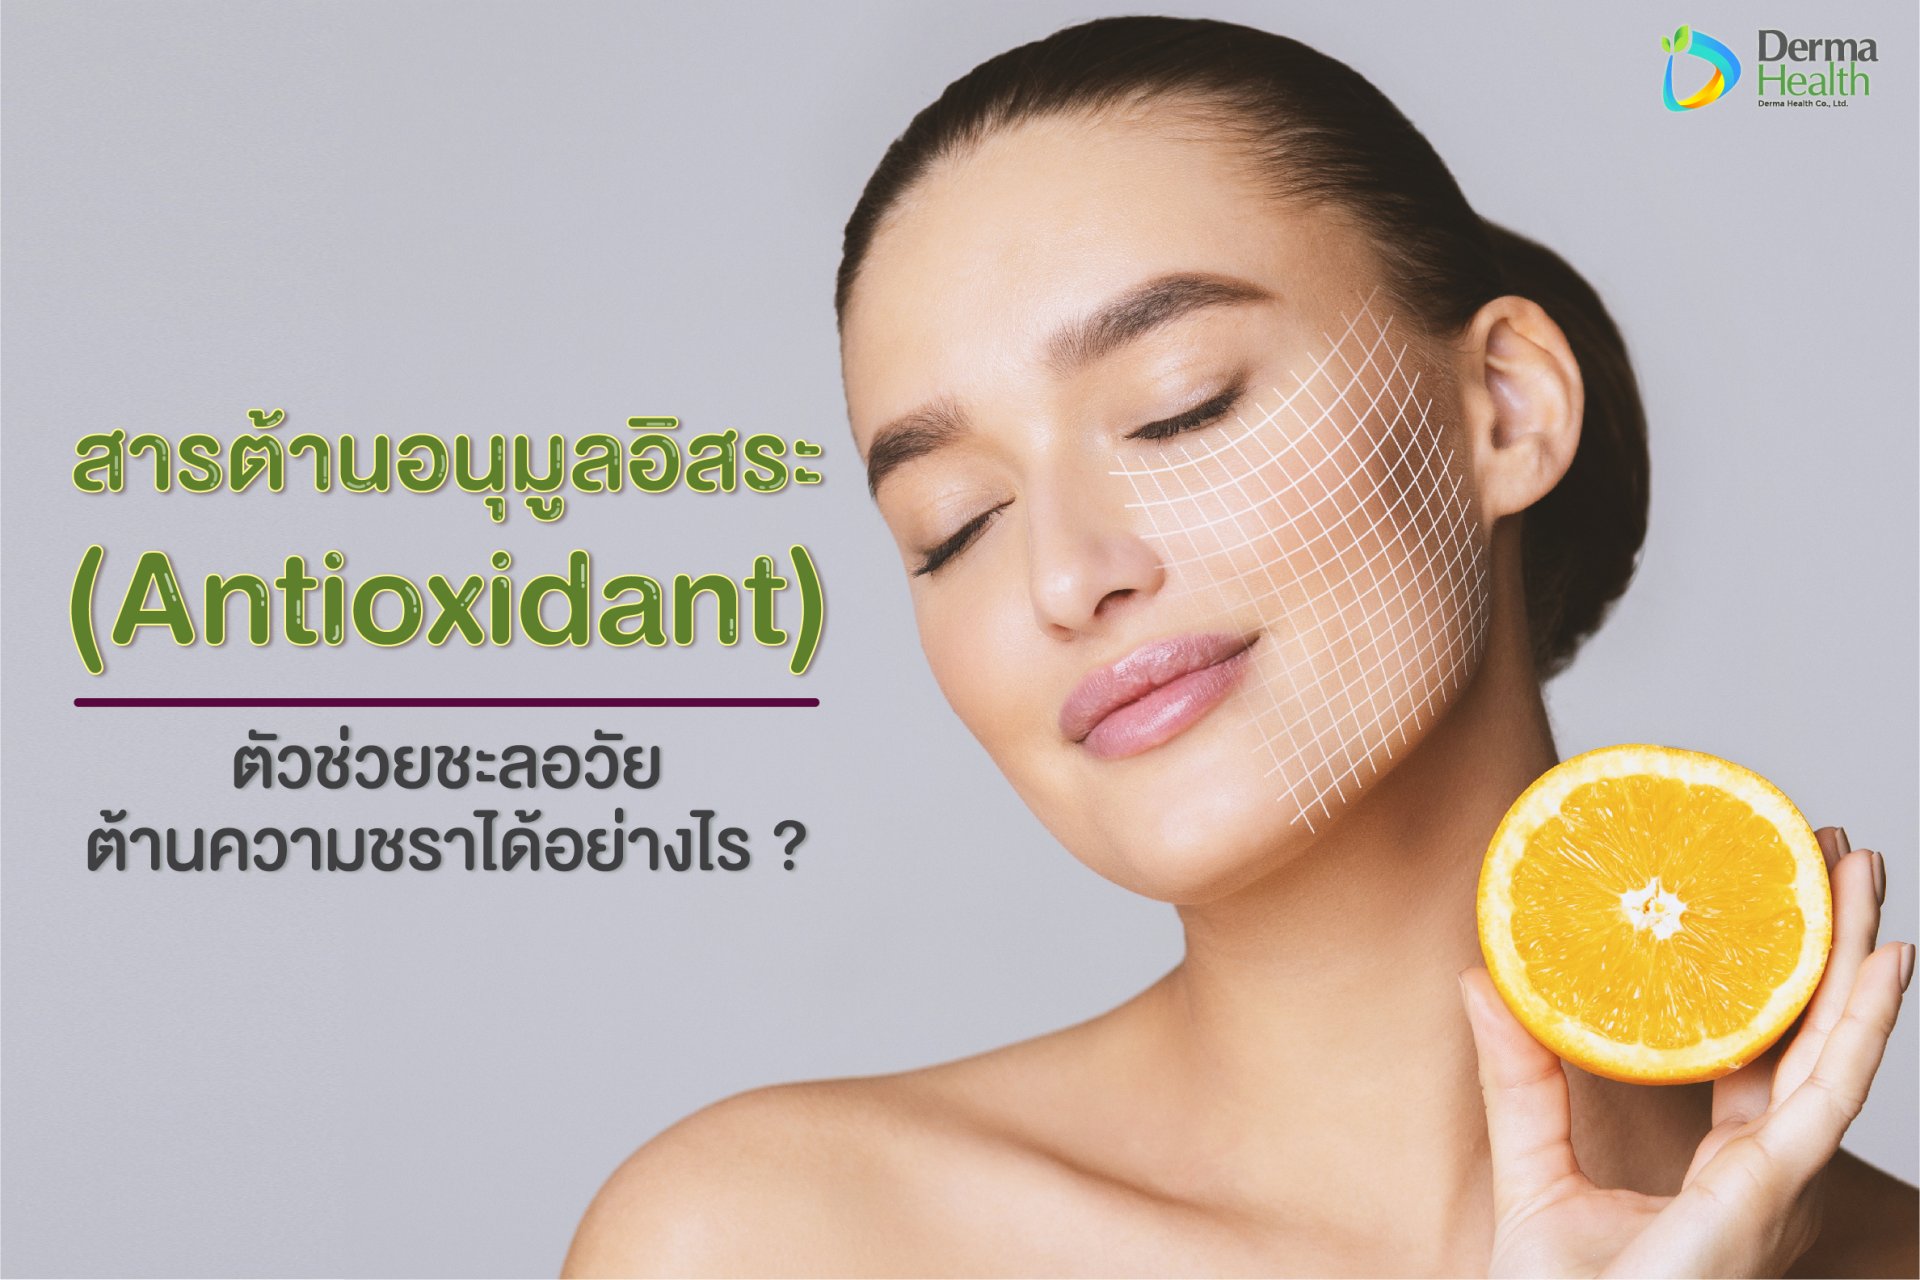 สารต้านอนุมูลอิสระ (Antioxidant) ตัวช่วยชะลอวัยได้อย่างไร ?